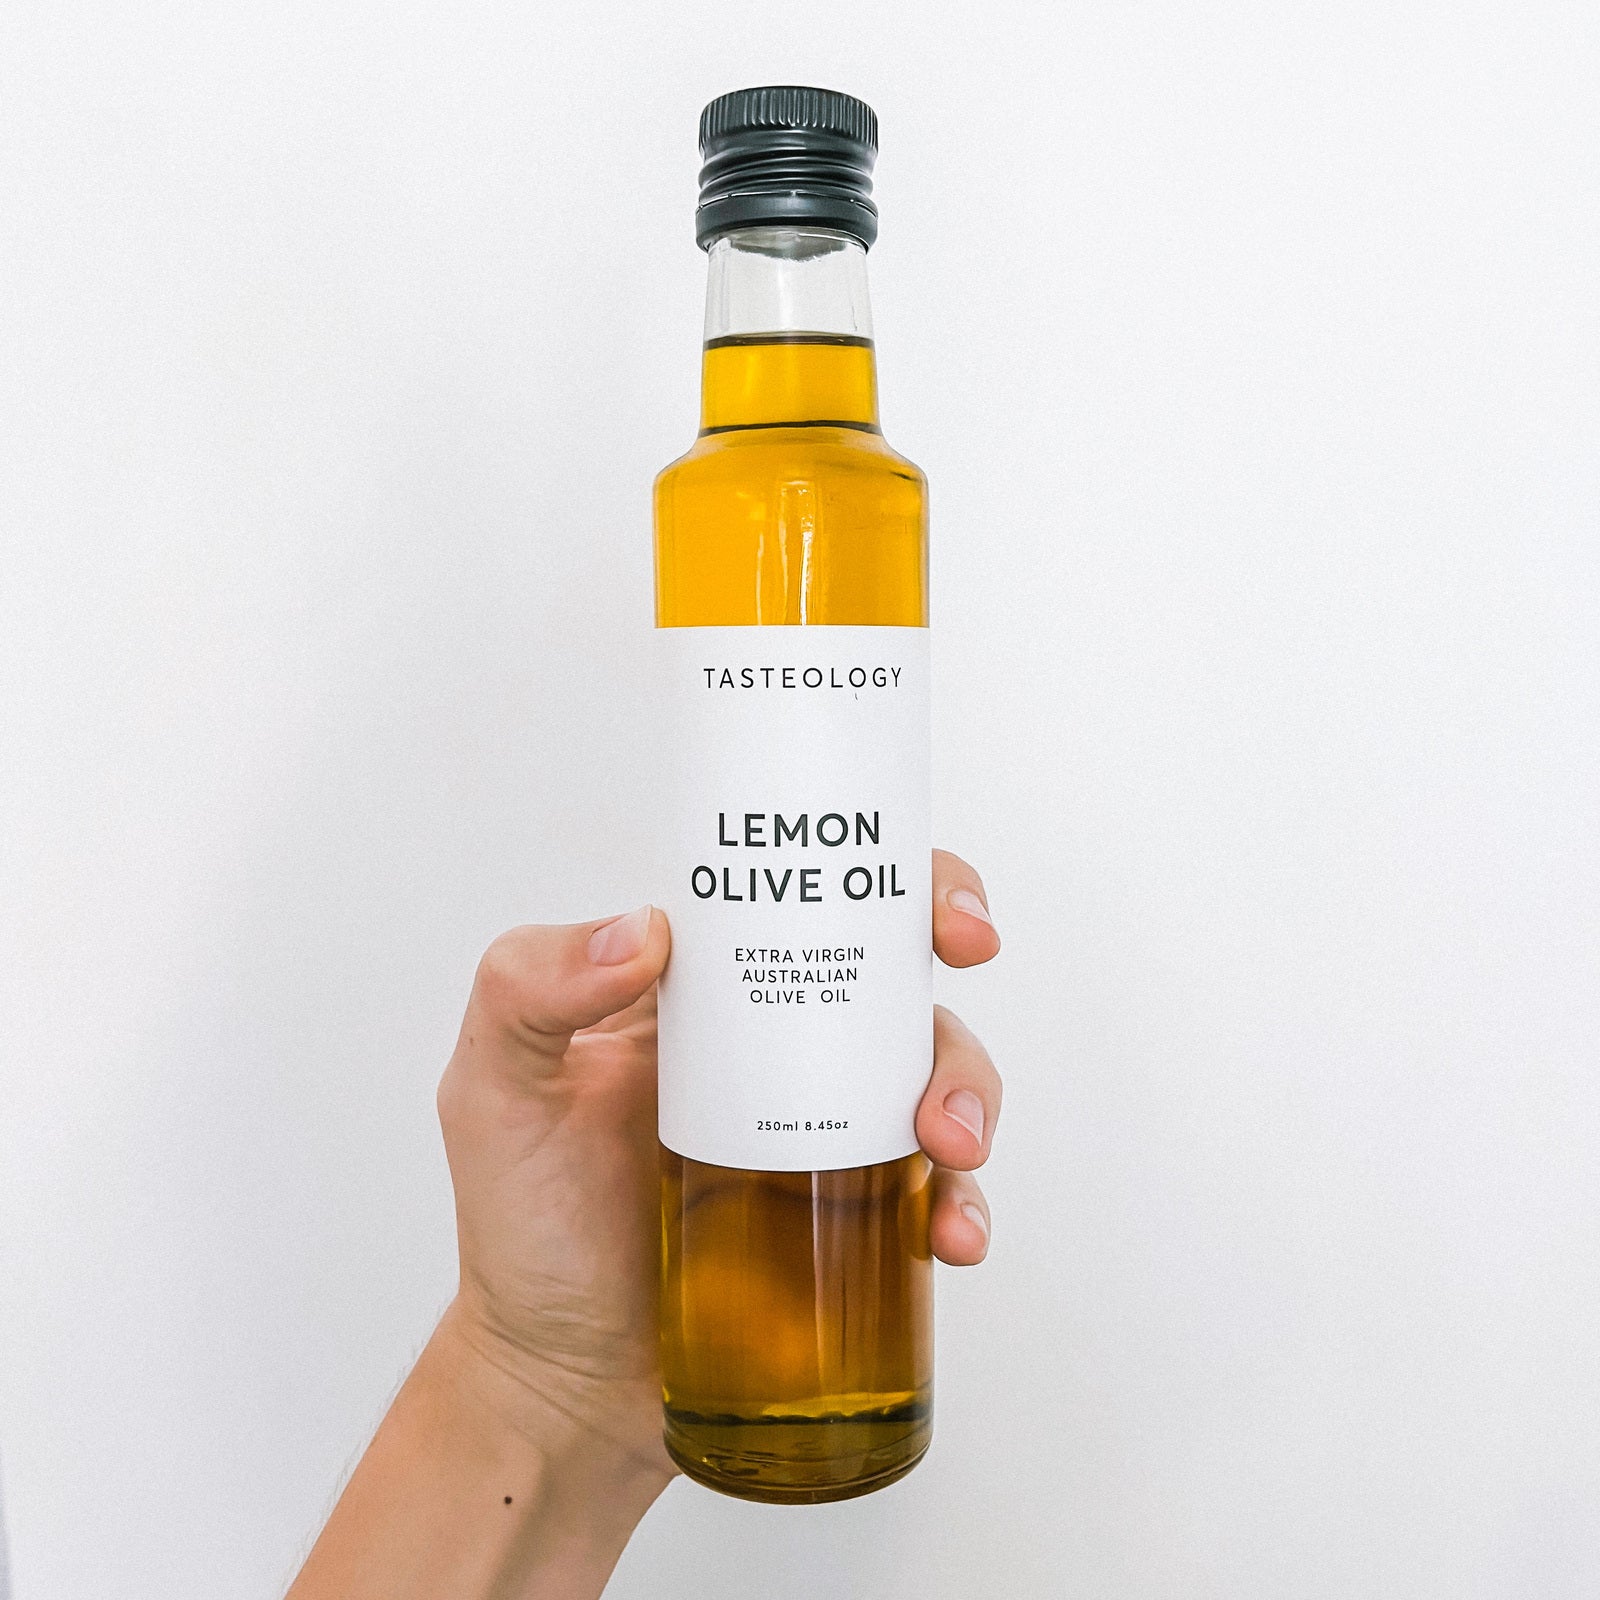 Lemon Olive Oil 250ml